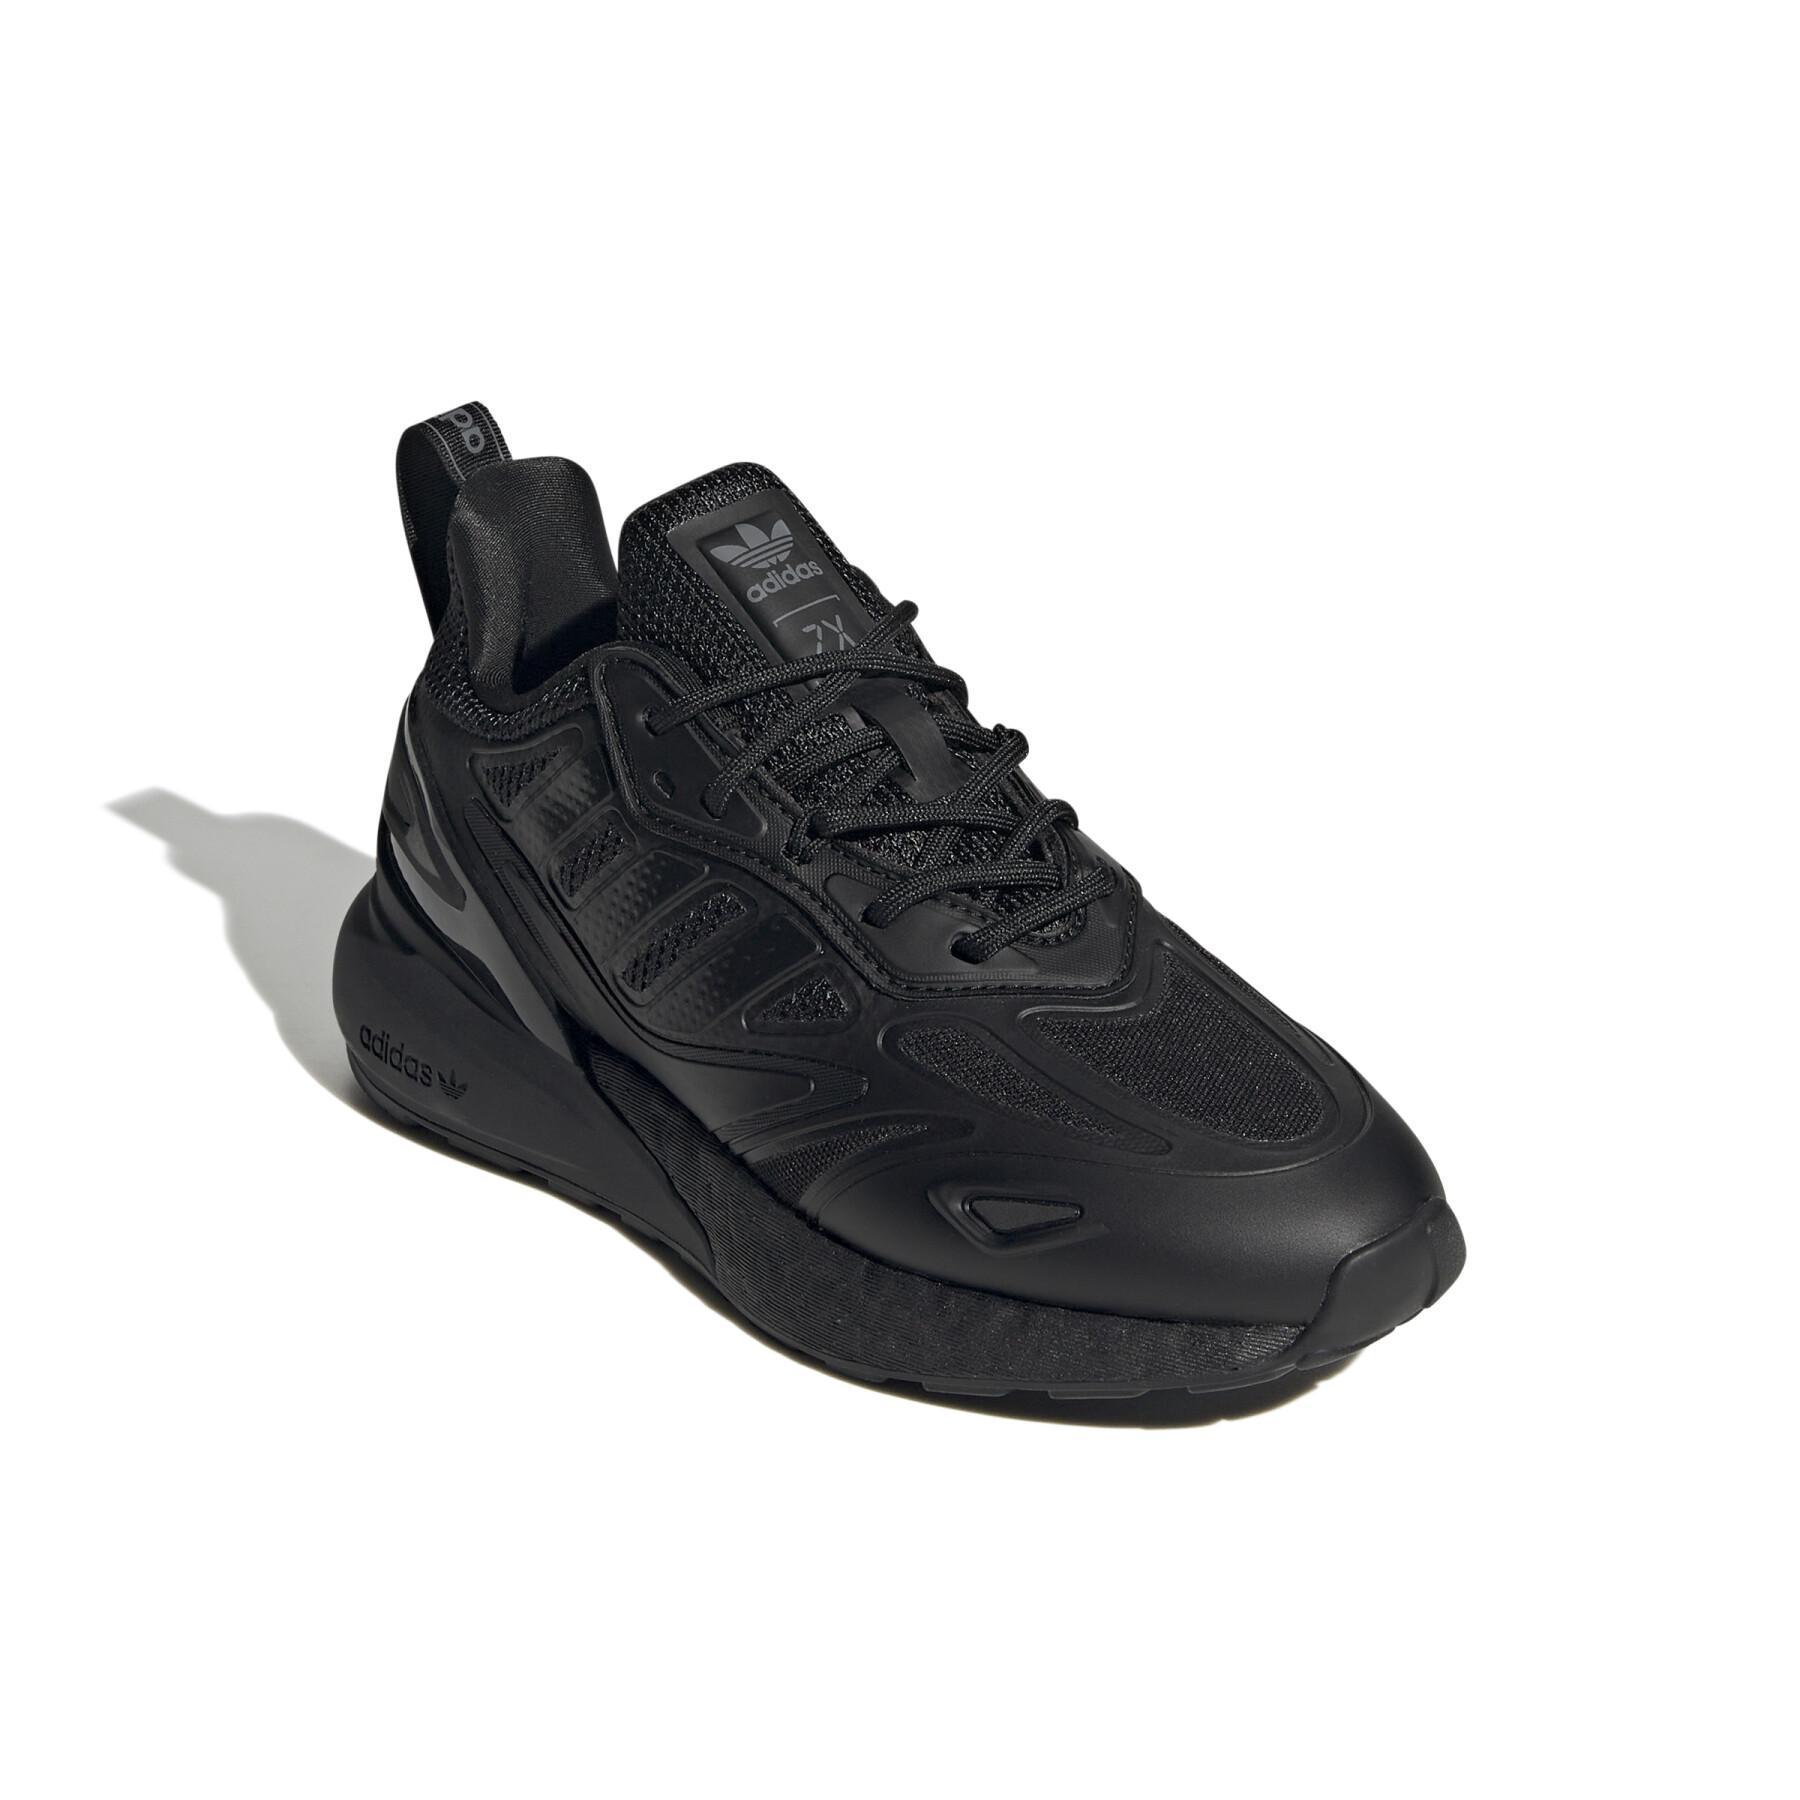 Children's sneakers adidas Originals ZX 2K Boost 2.0